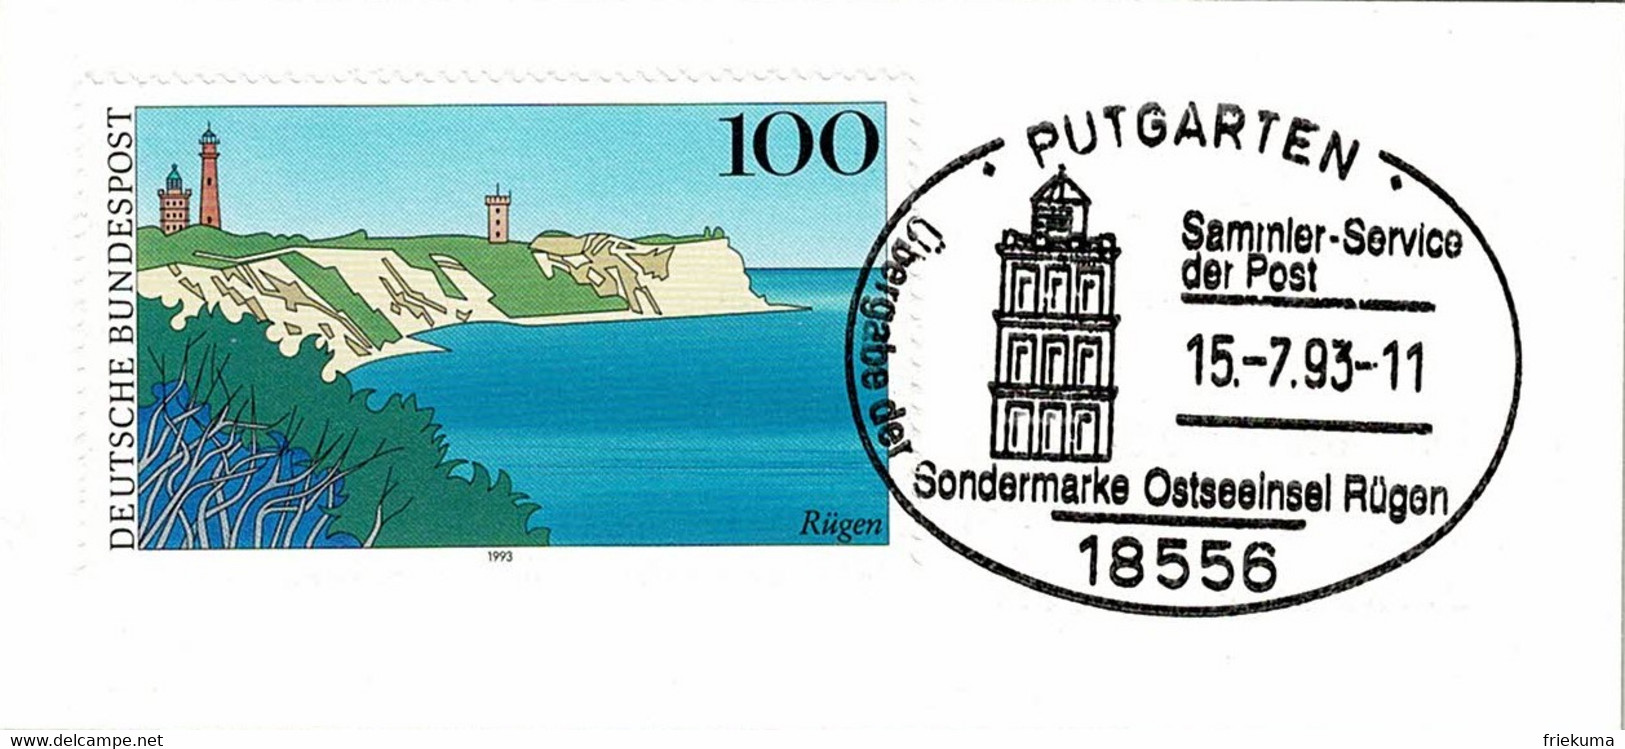 Deutsche Bundespost 1993, Sonderstempel Ostseeinsel Rügen Putgarten - Iles